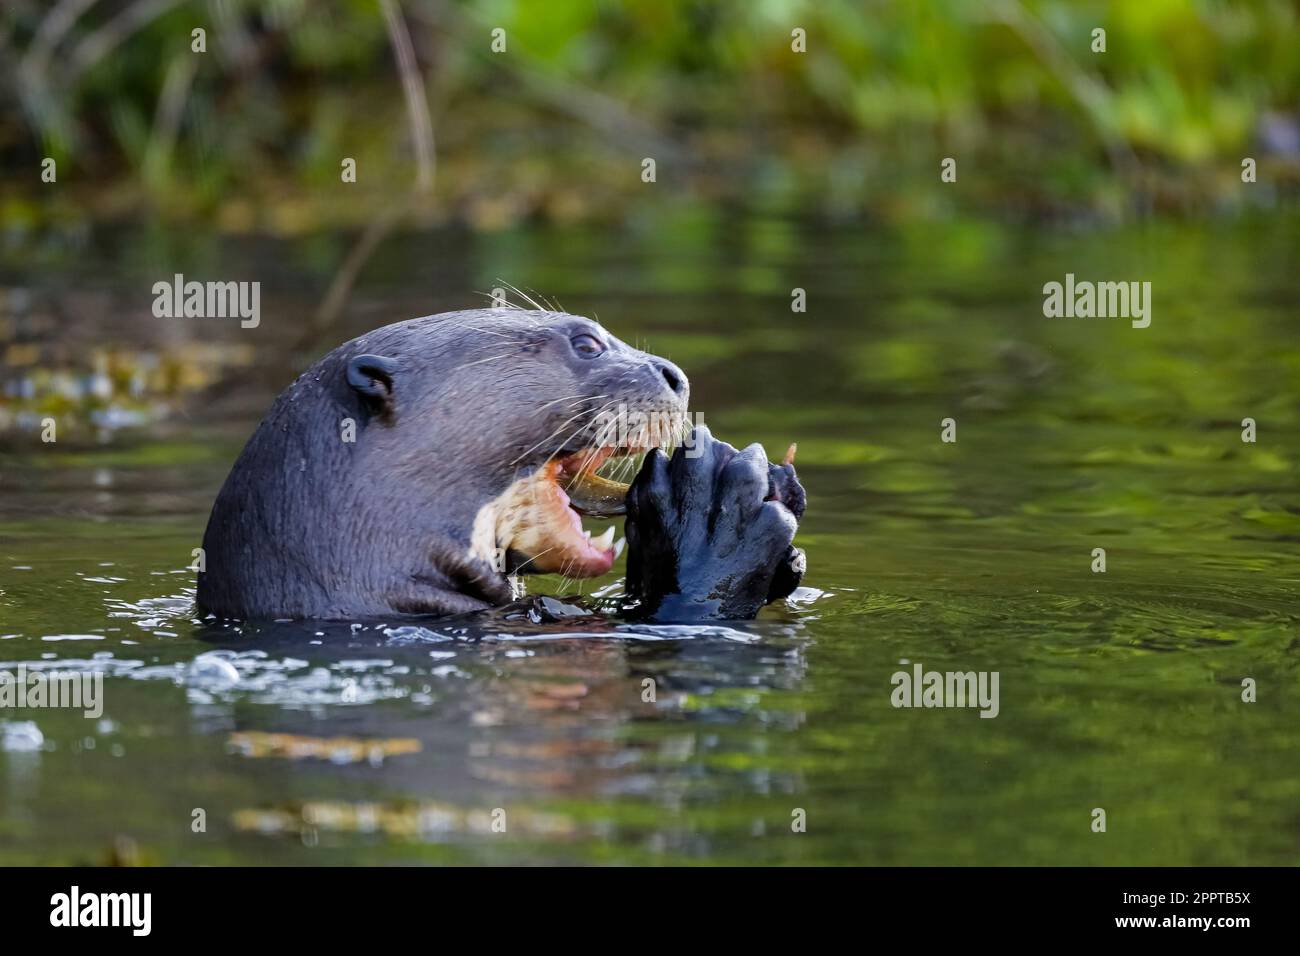 Seitlicher Blick auf einen riesigen Otter, der einen Fisch in seinen Krallen auf der Flußoberfläche frisst, Pantanal Wetlands, Mato Grosso, Brasilien Stockfoto